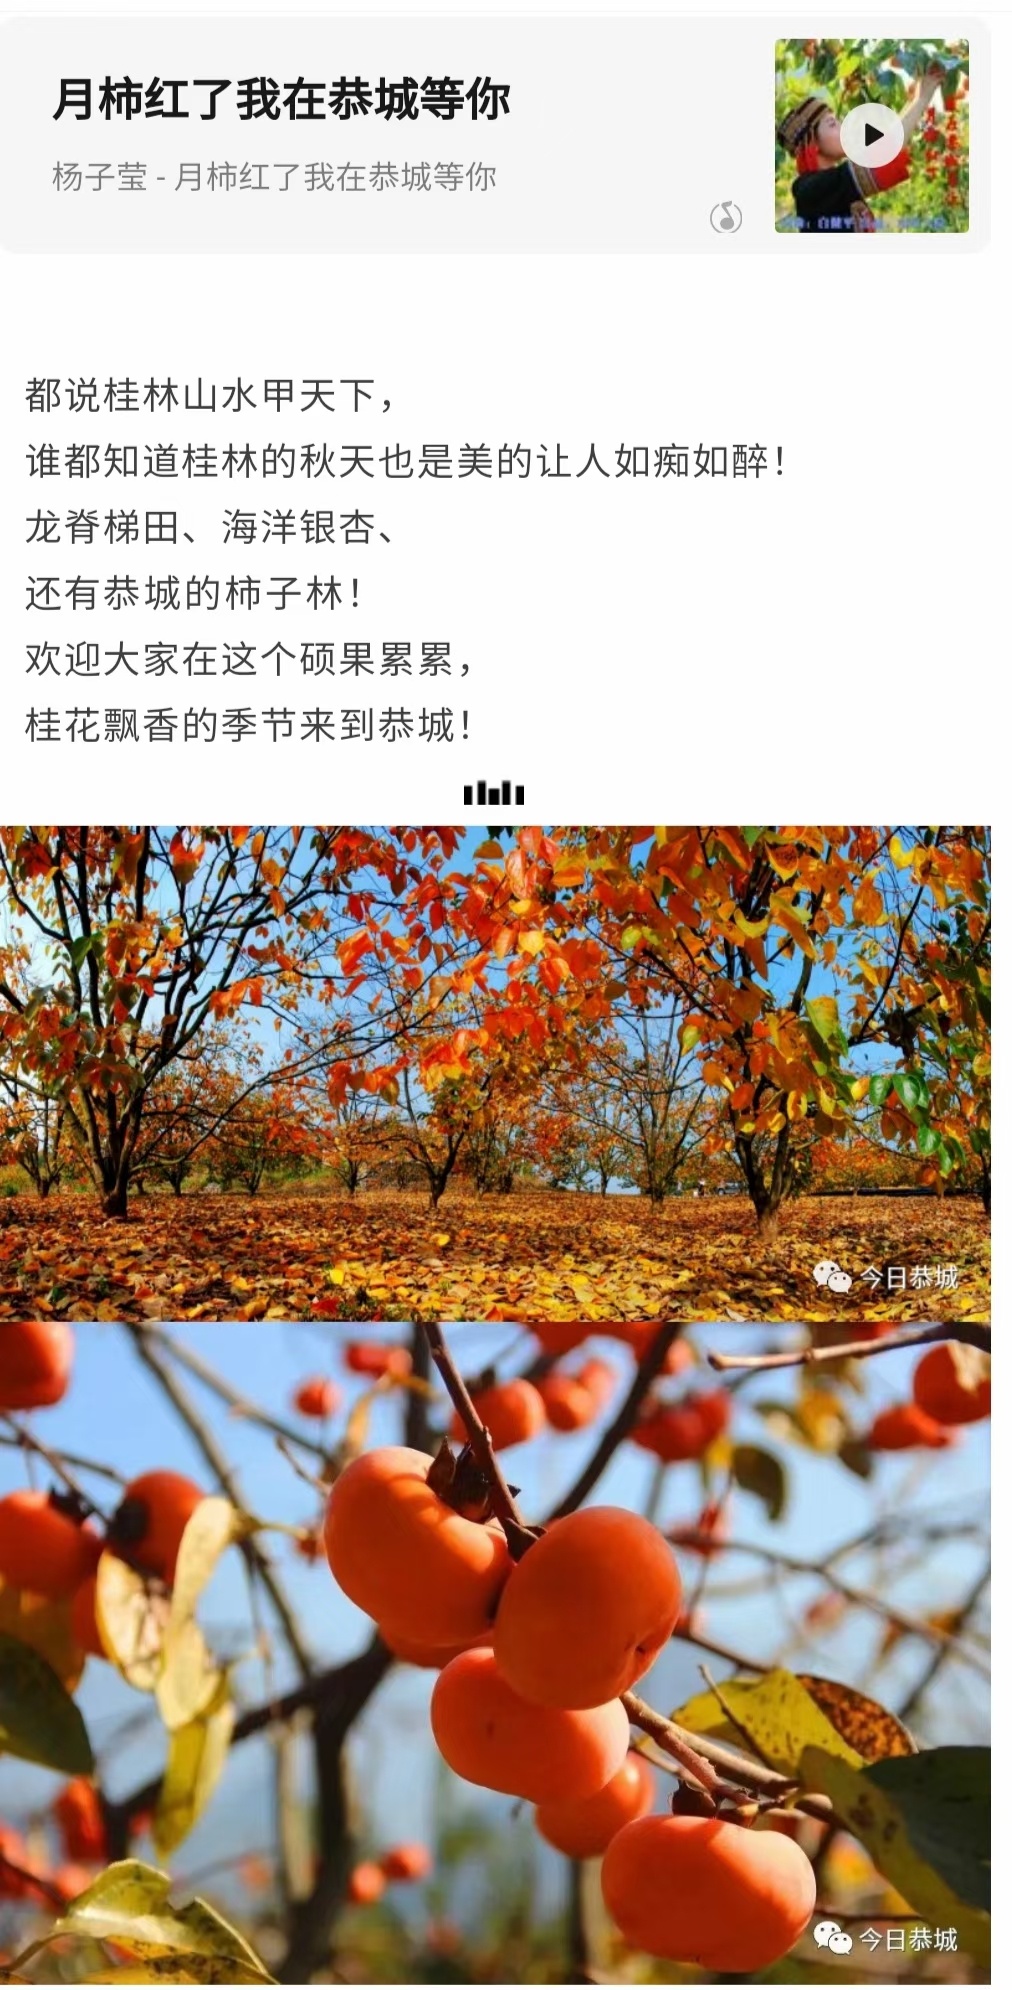 家乡的柿子红了669 / 作者:陈宏福 / 帖子ID:300201